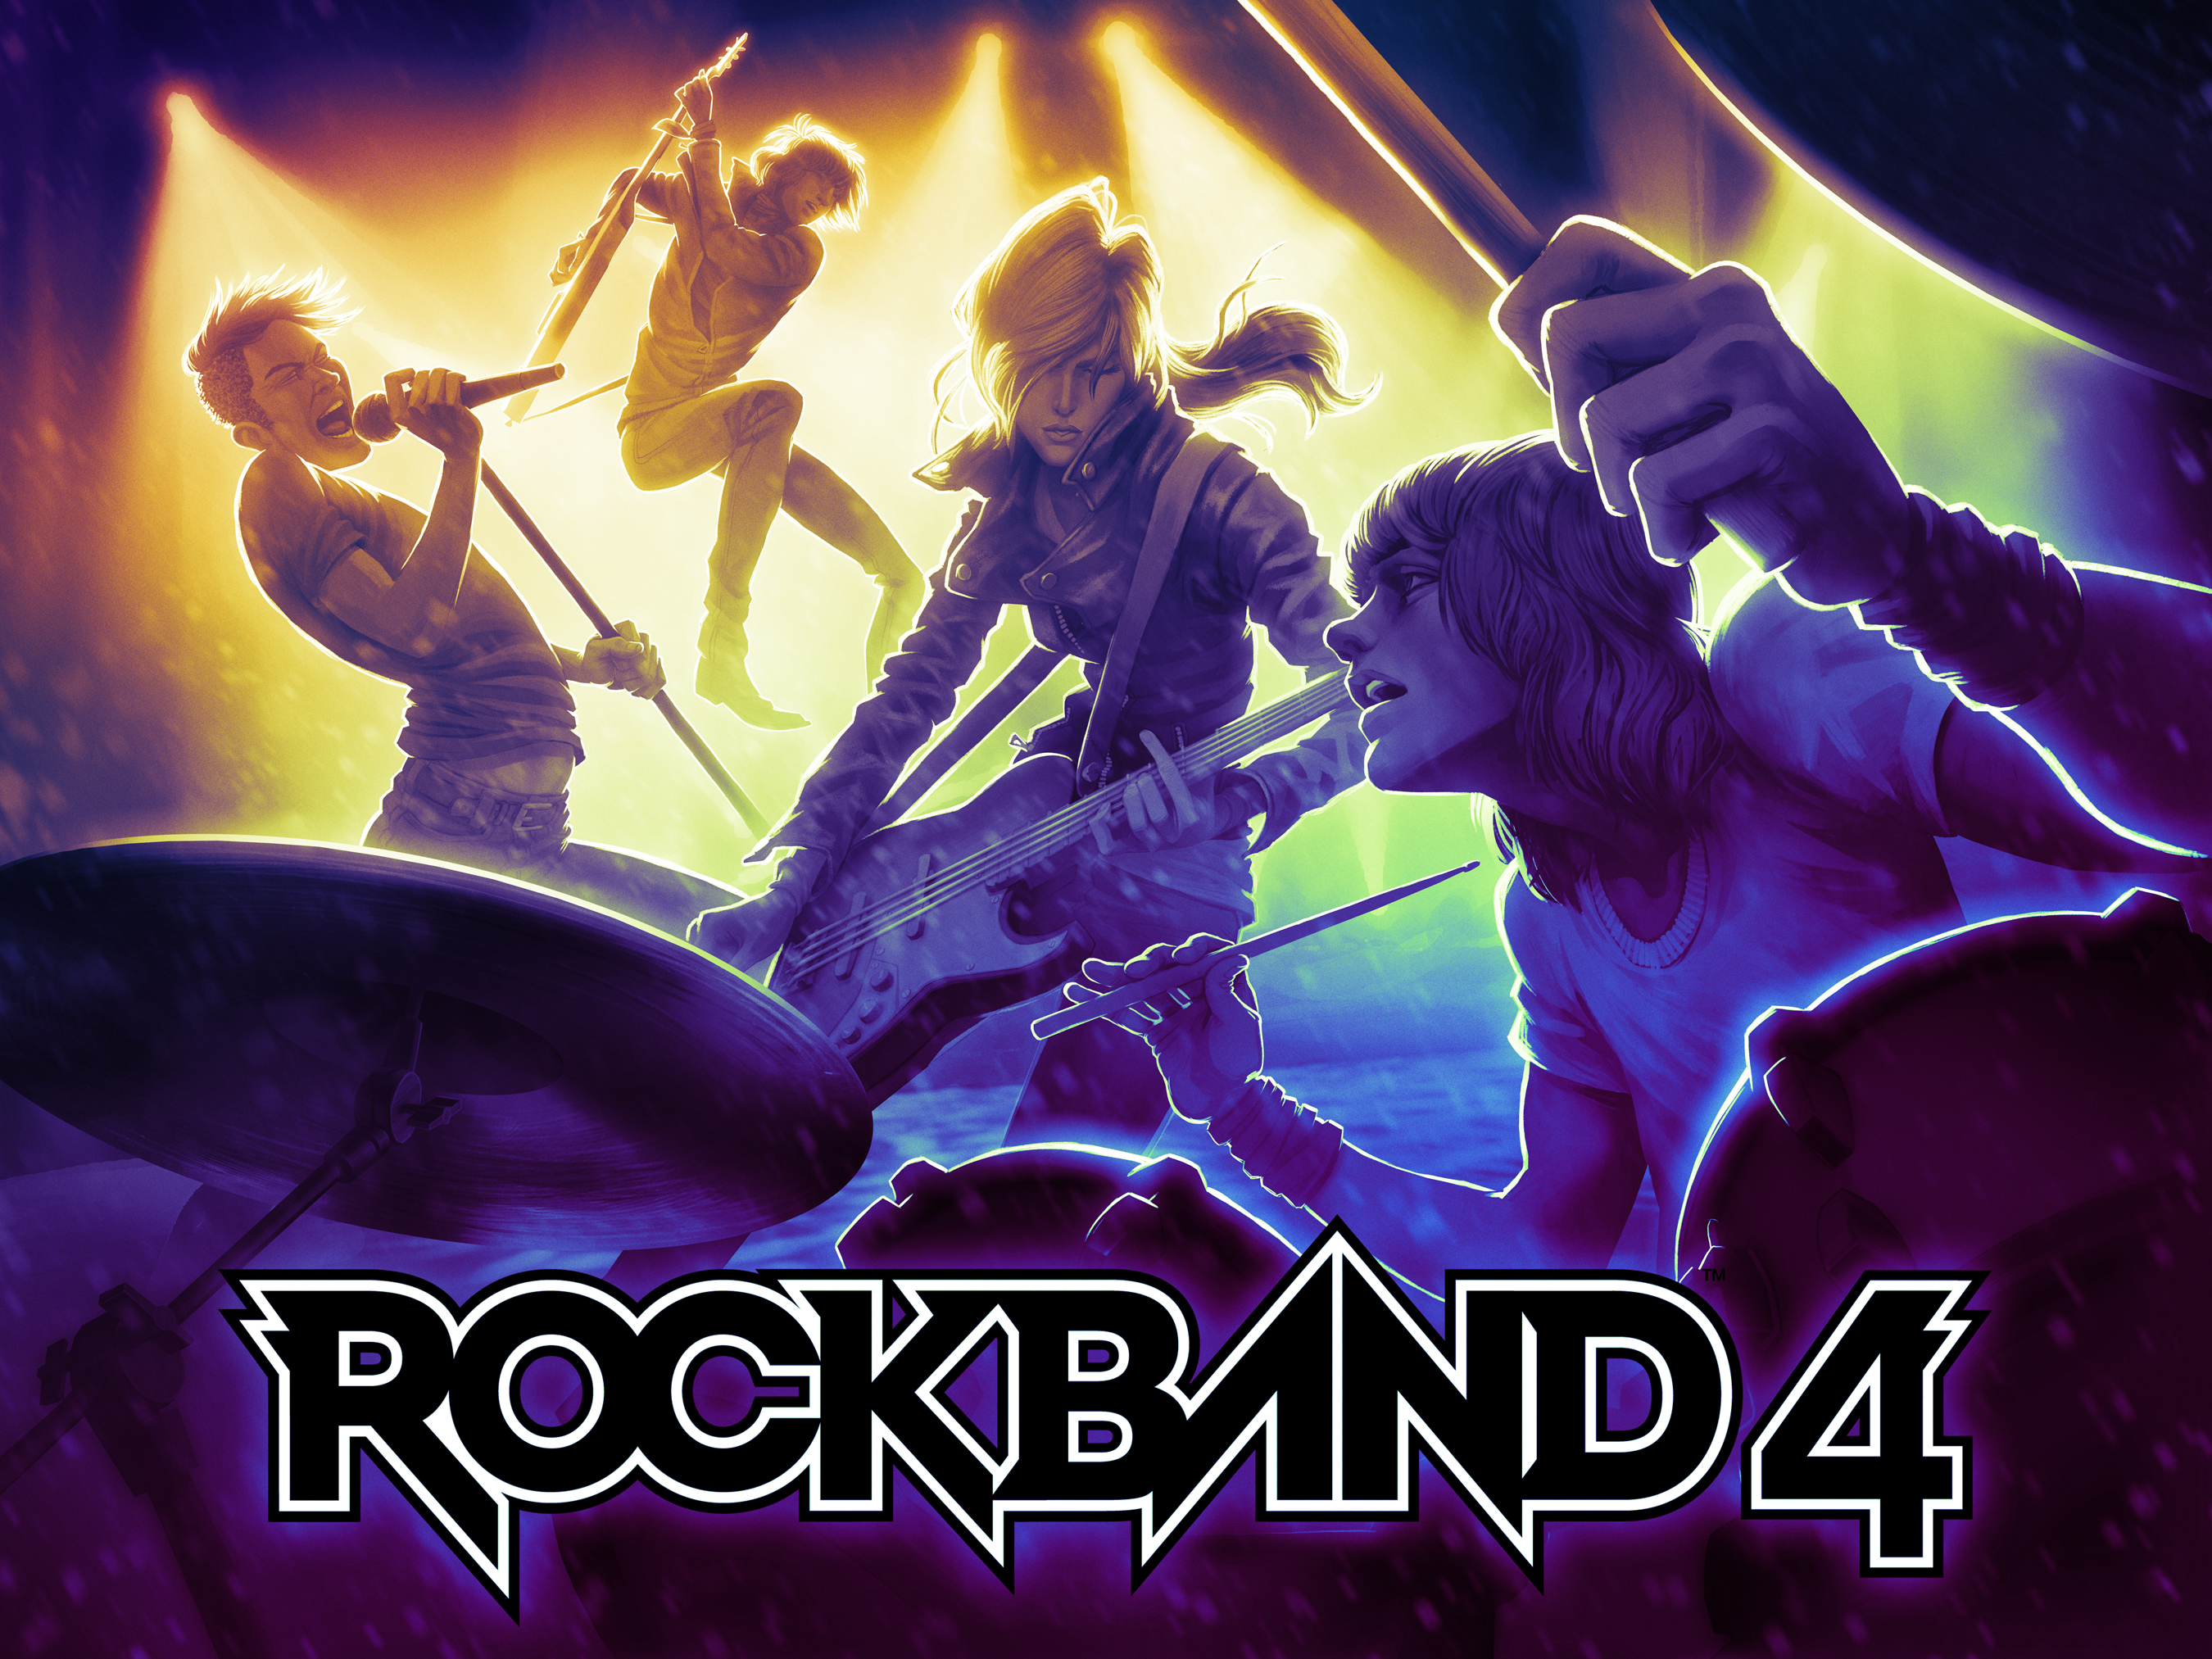 rockband4-promo-illus36yuv.jpg